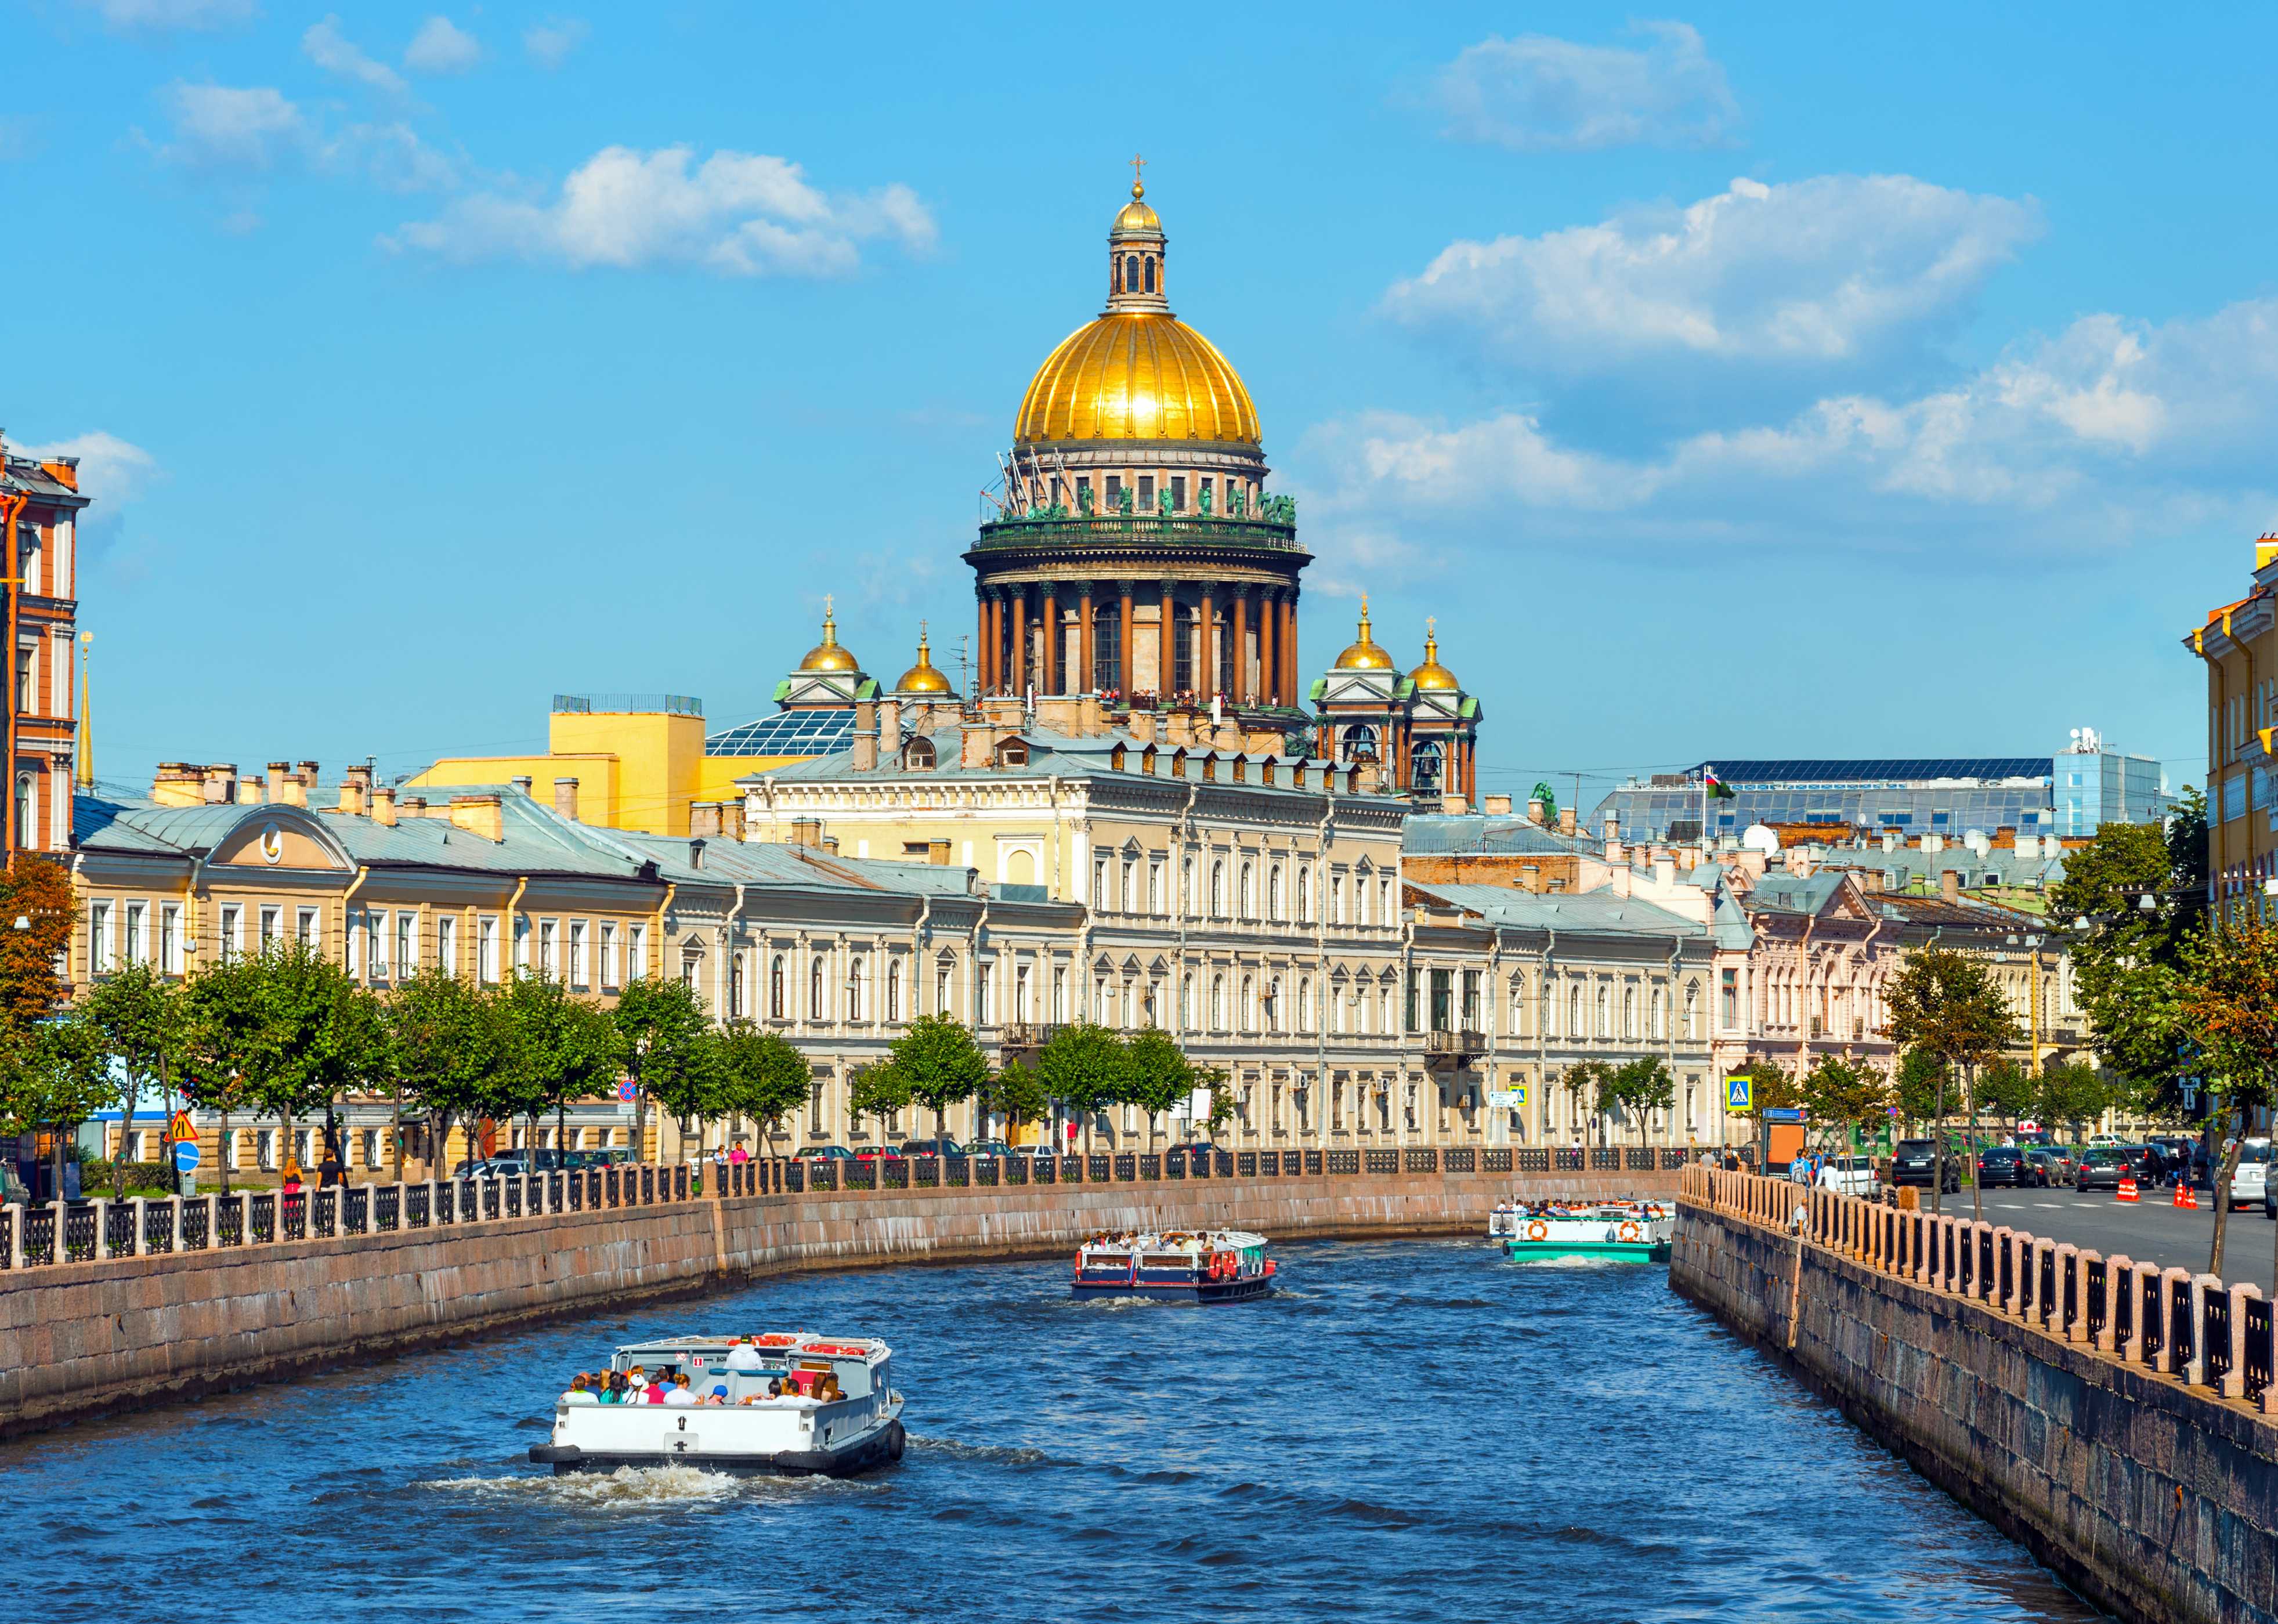 35 самых красивых городов россии для путешествий - выискали